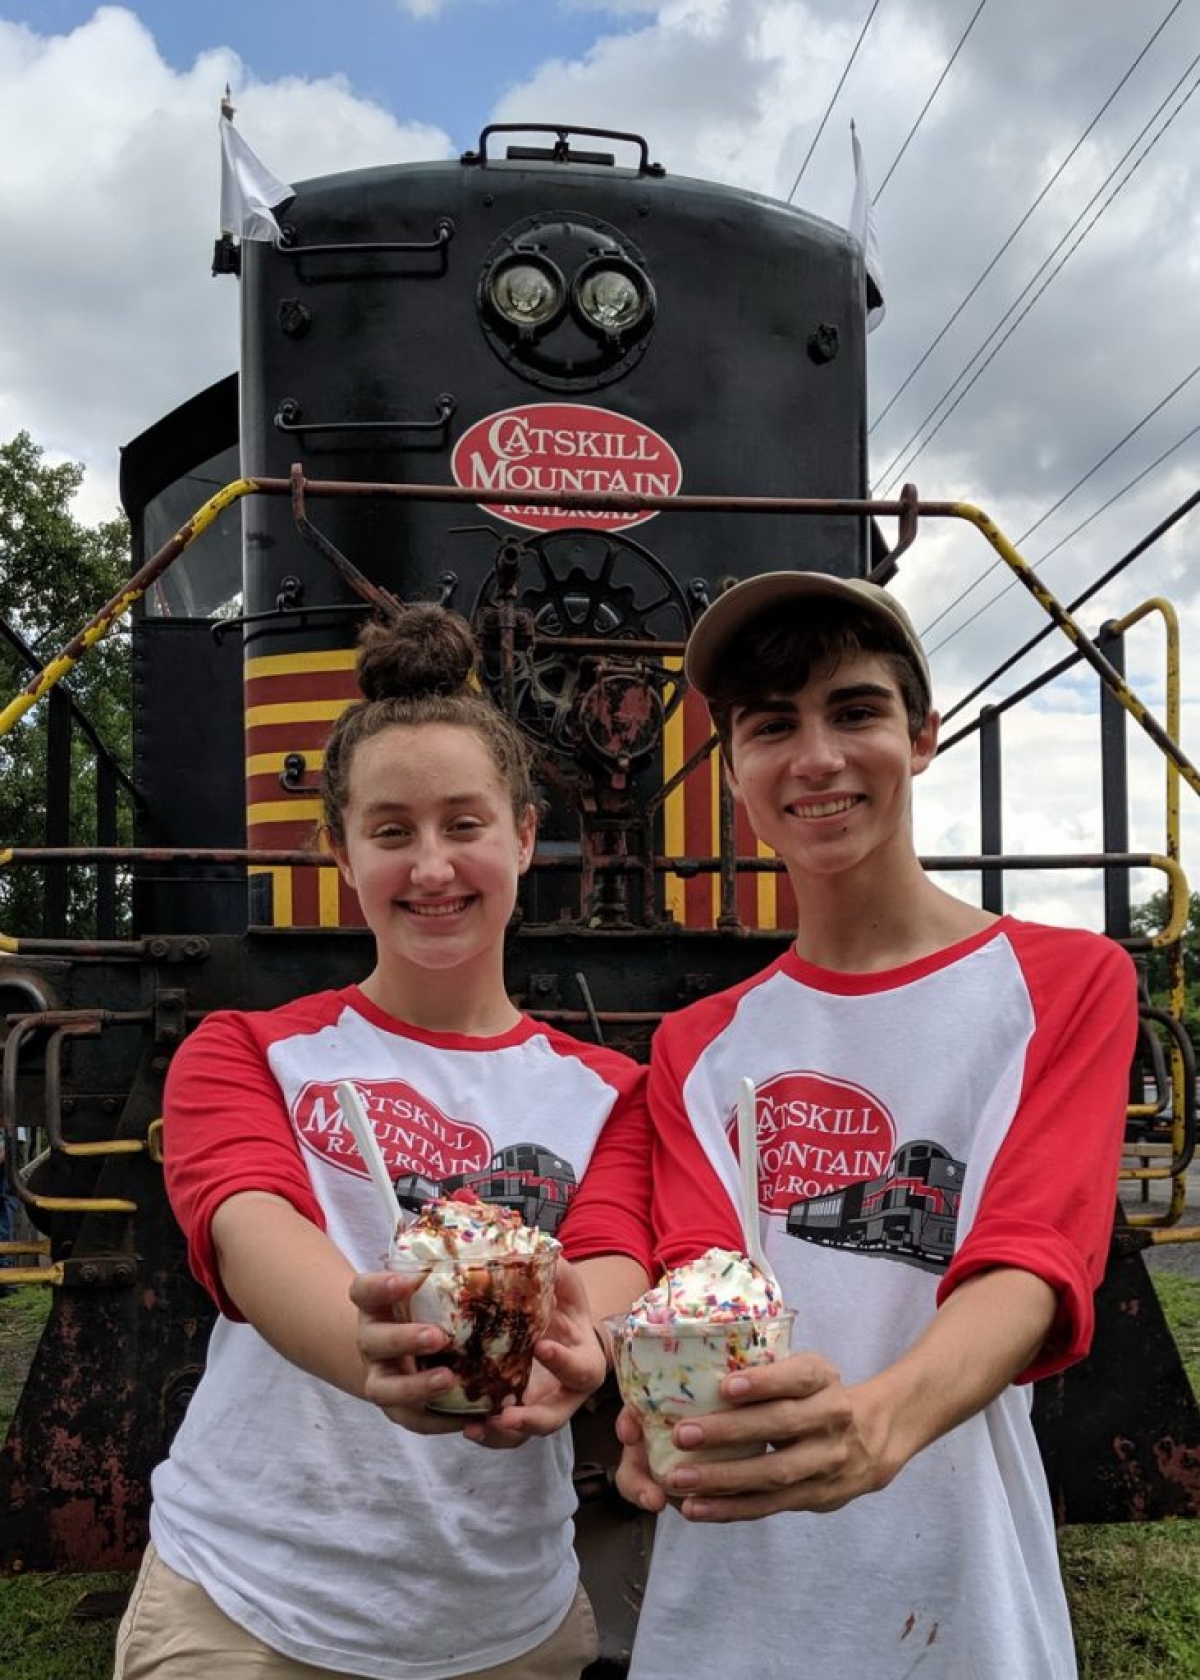 Ice Cream Sundays on the Catskill Mountain Railroad